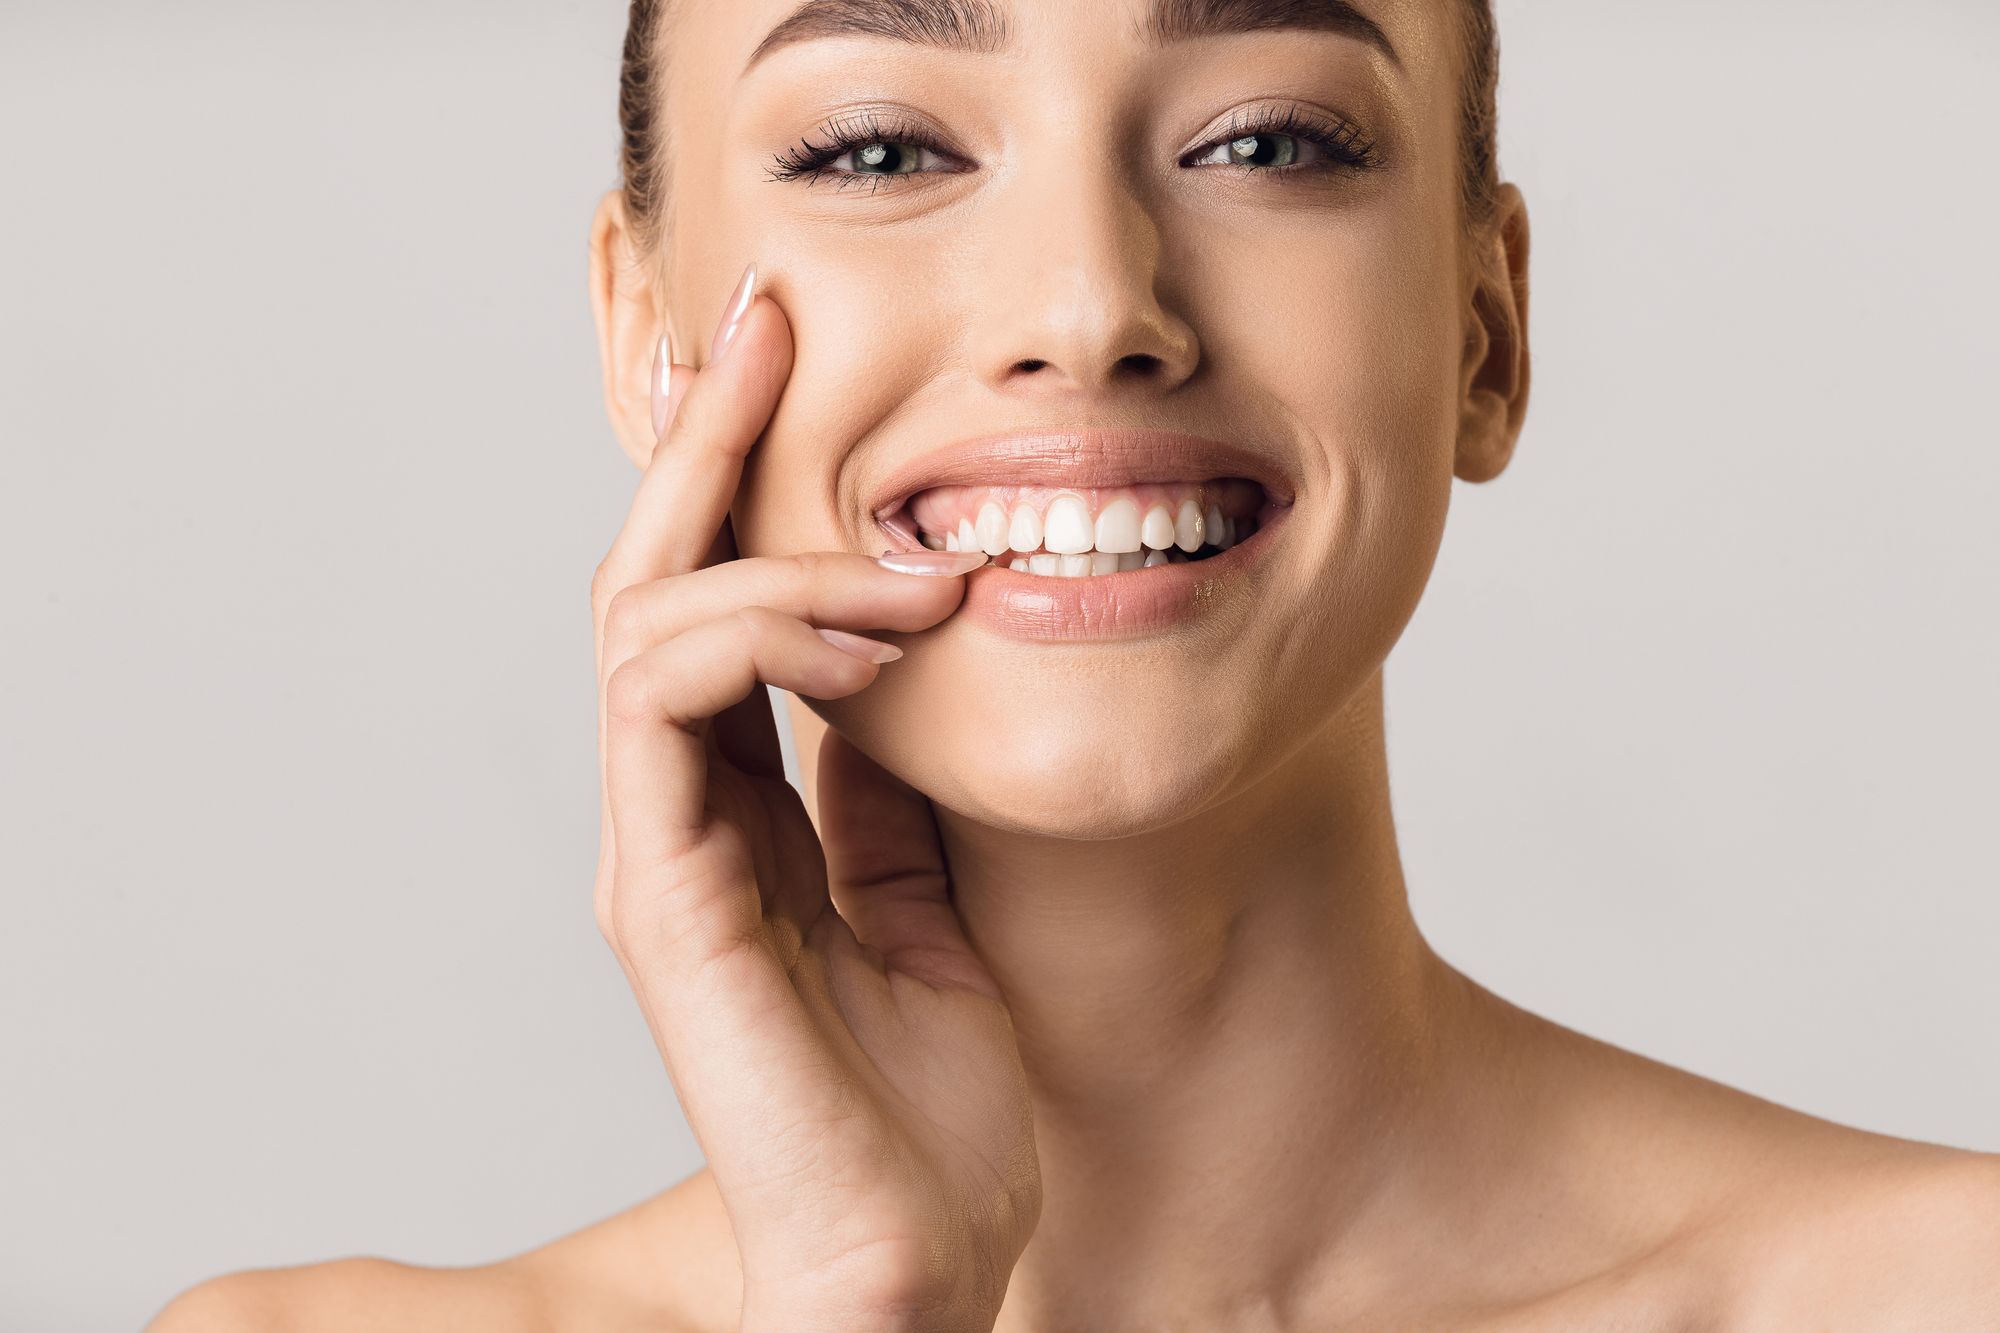 Zahnaufhellung: Wo man Zähne am besten und günstigsten bleichen kann